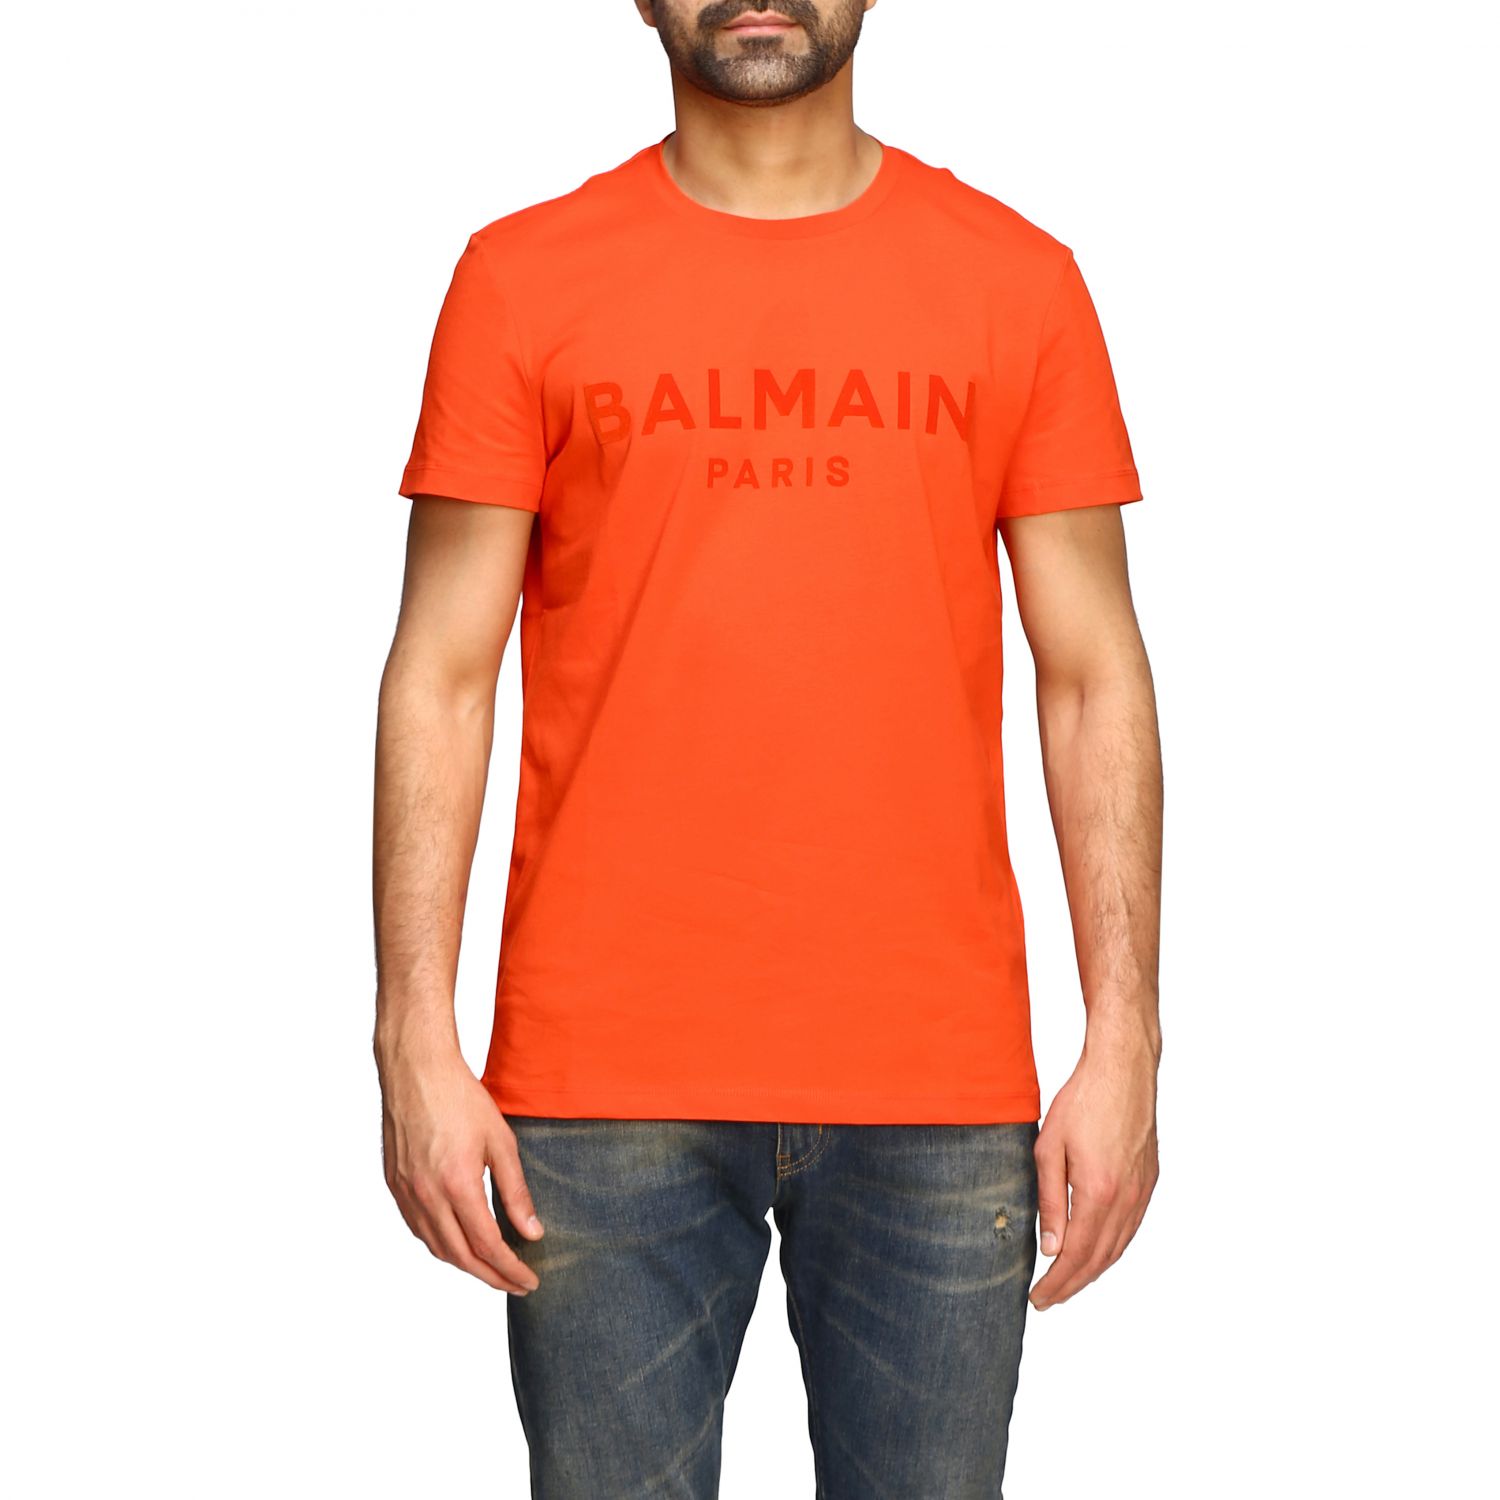 Balmain Outlet: short-sleeved T-shirt with logo - Red | Balmain t-shirt ...